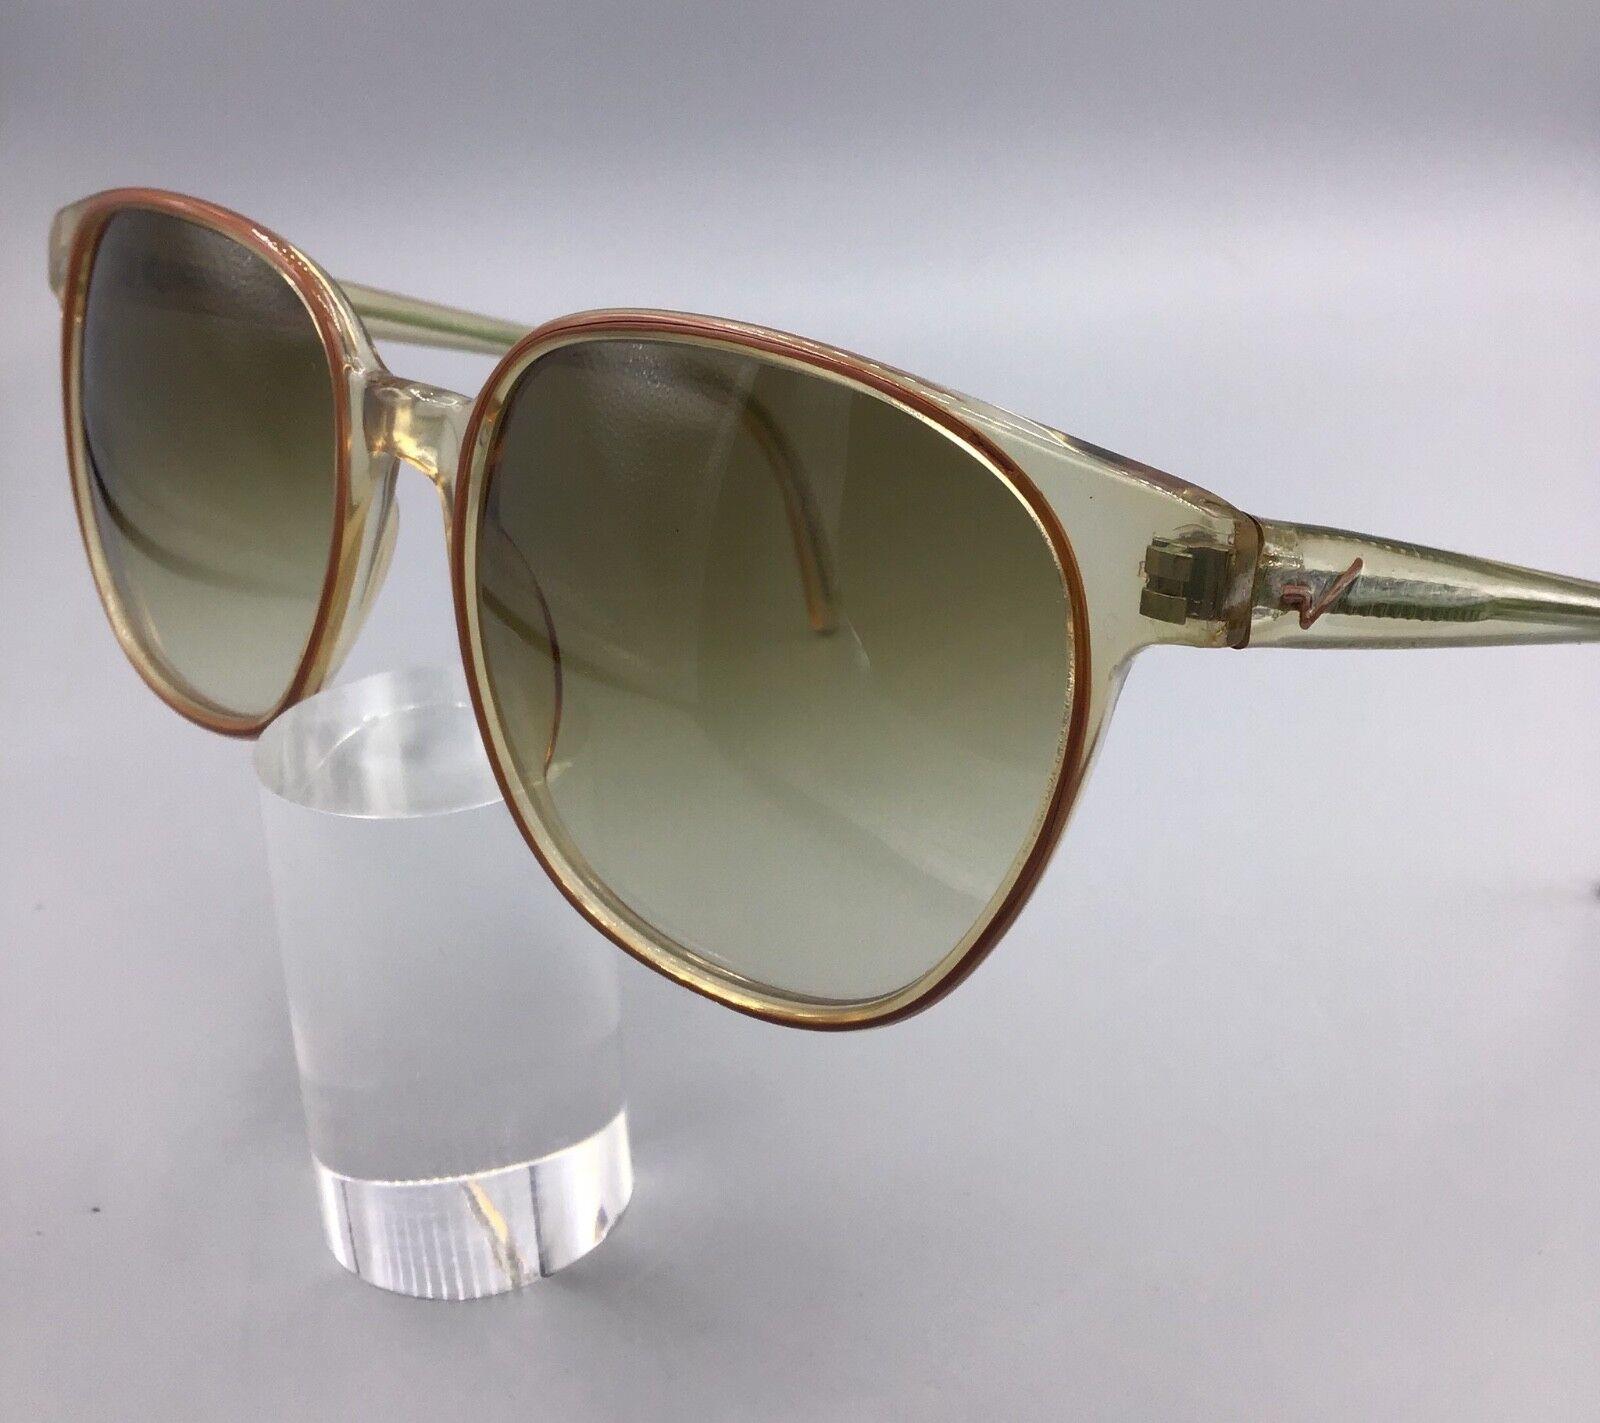 Vogart occhiale vintage model L31 120 lunettes gafas sunglasses sonnenbrillen